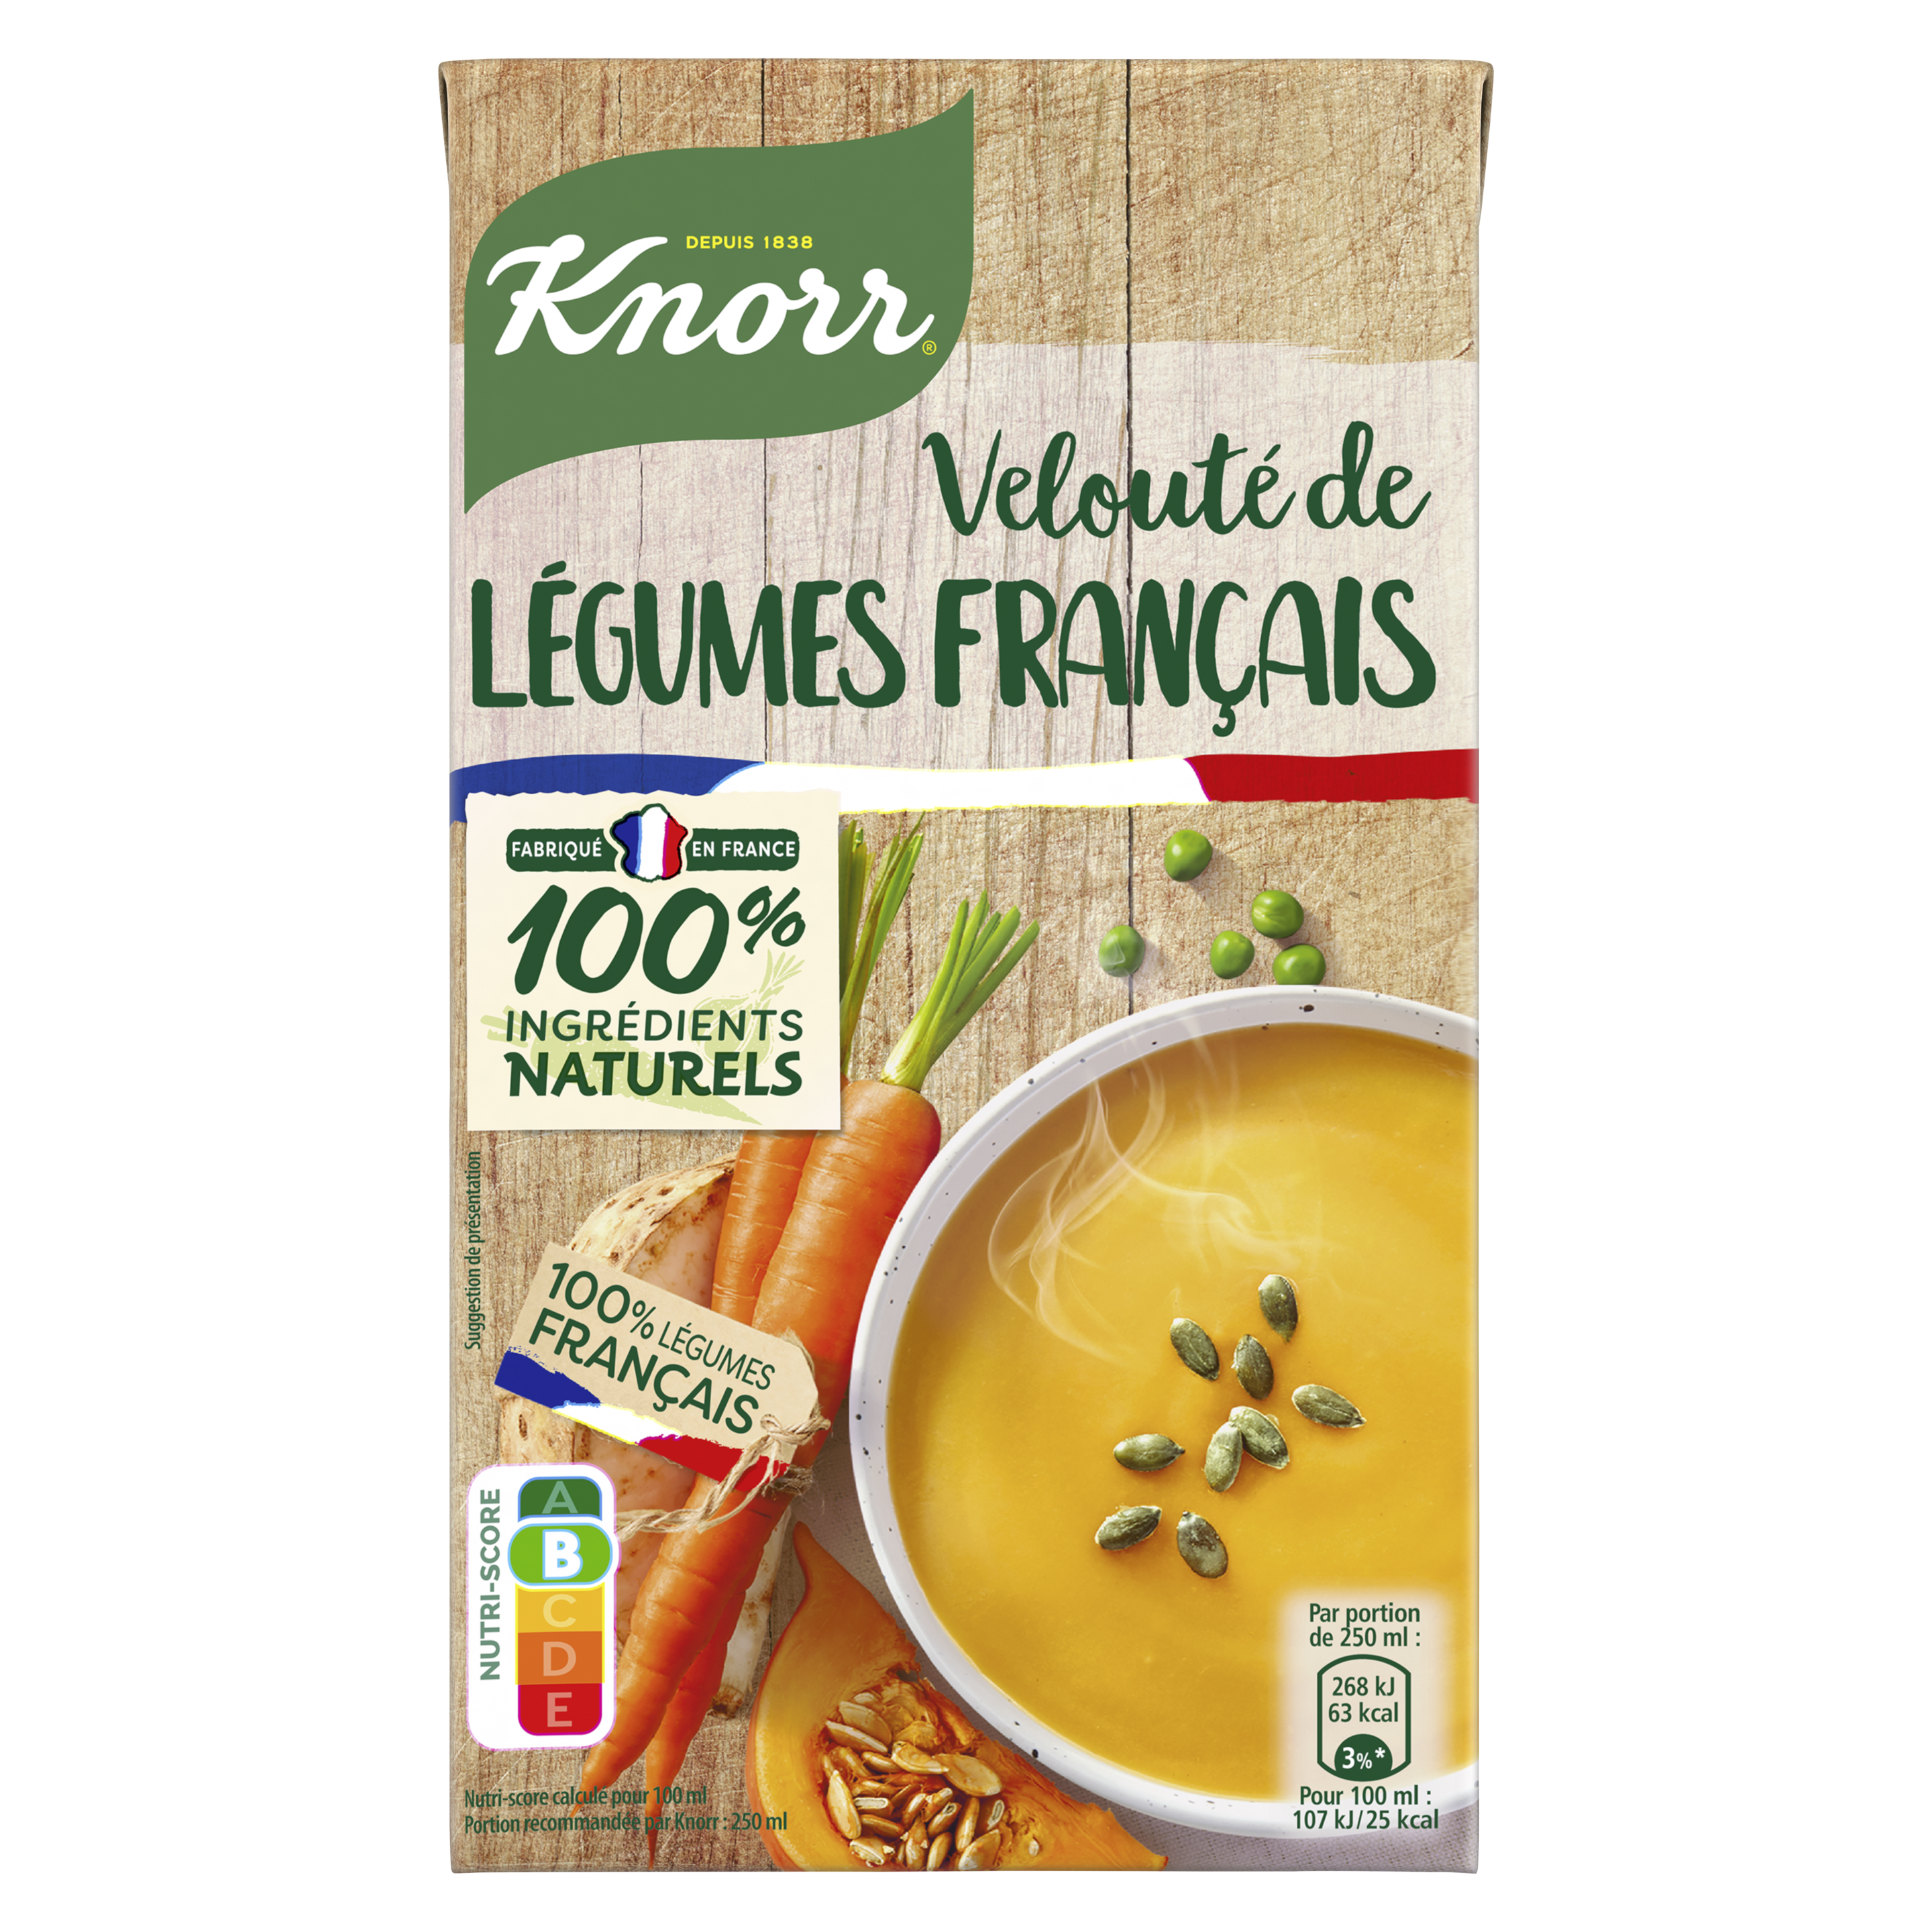 Soupe Velouté de légumes français